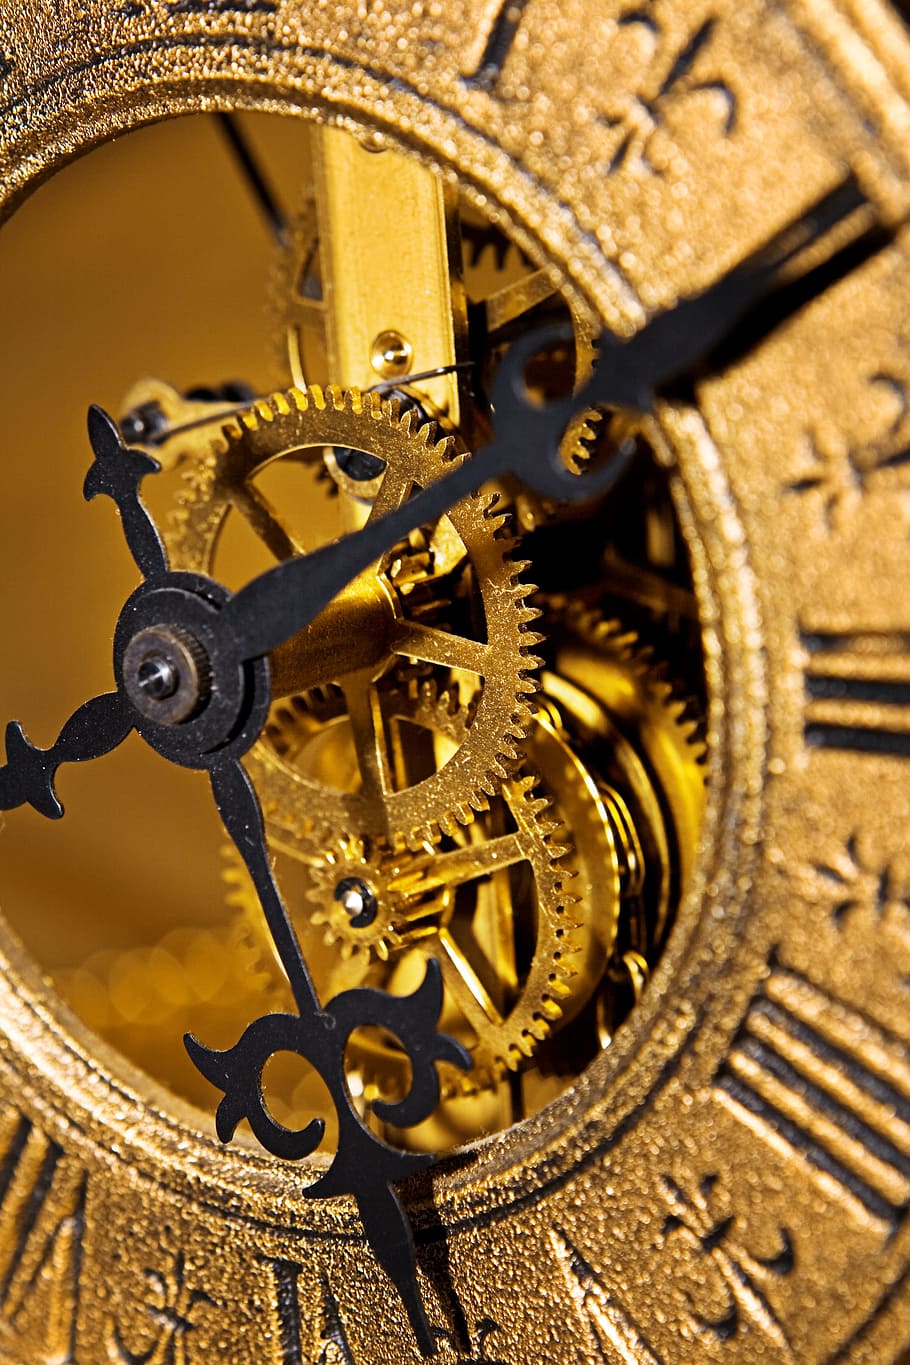 Đồng hồ đếm ngược thời gian là một công cụ hữu ích để giúp bạn quản lý thời gian hiệu quả. Tự động tính toán và hiển thị thời gian đếm ngược cho một sự kiện cụ thể, giúp bạn tránh những trường hợp quên lịch và tạo động lực để hoàn thành những công việc quan trọng.